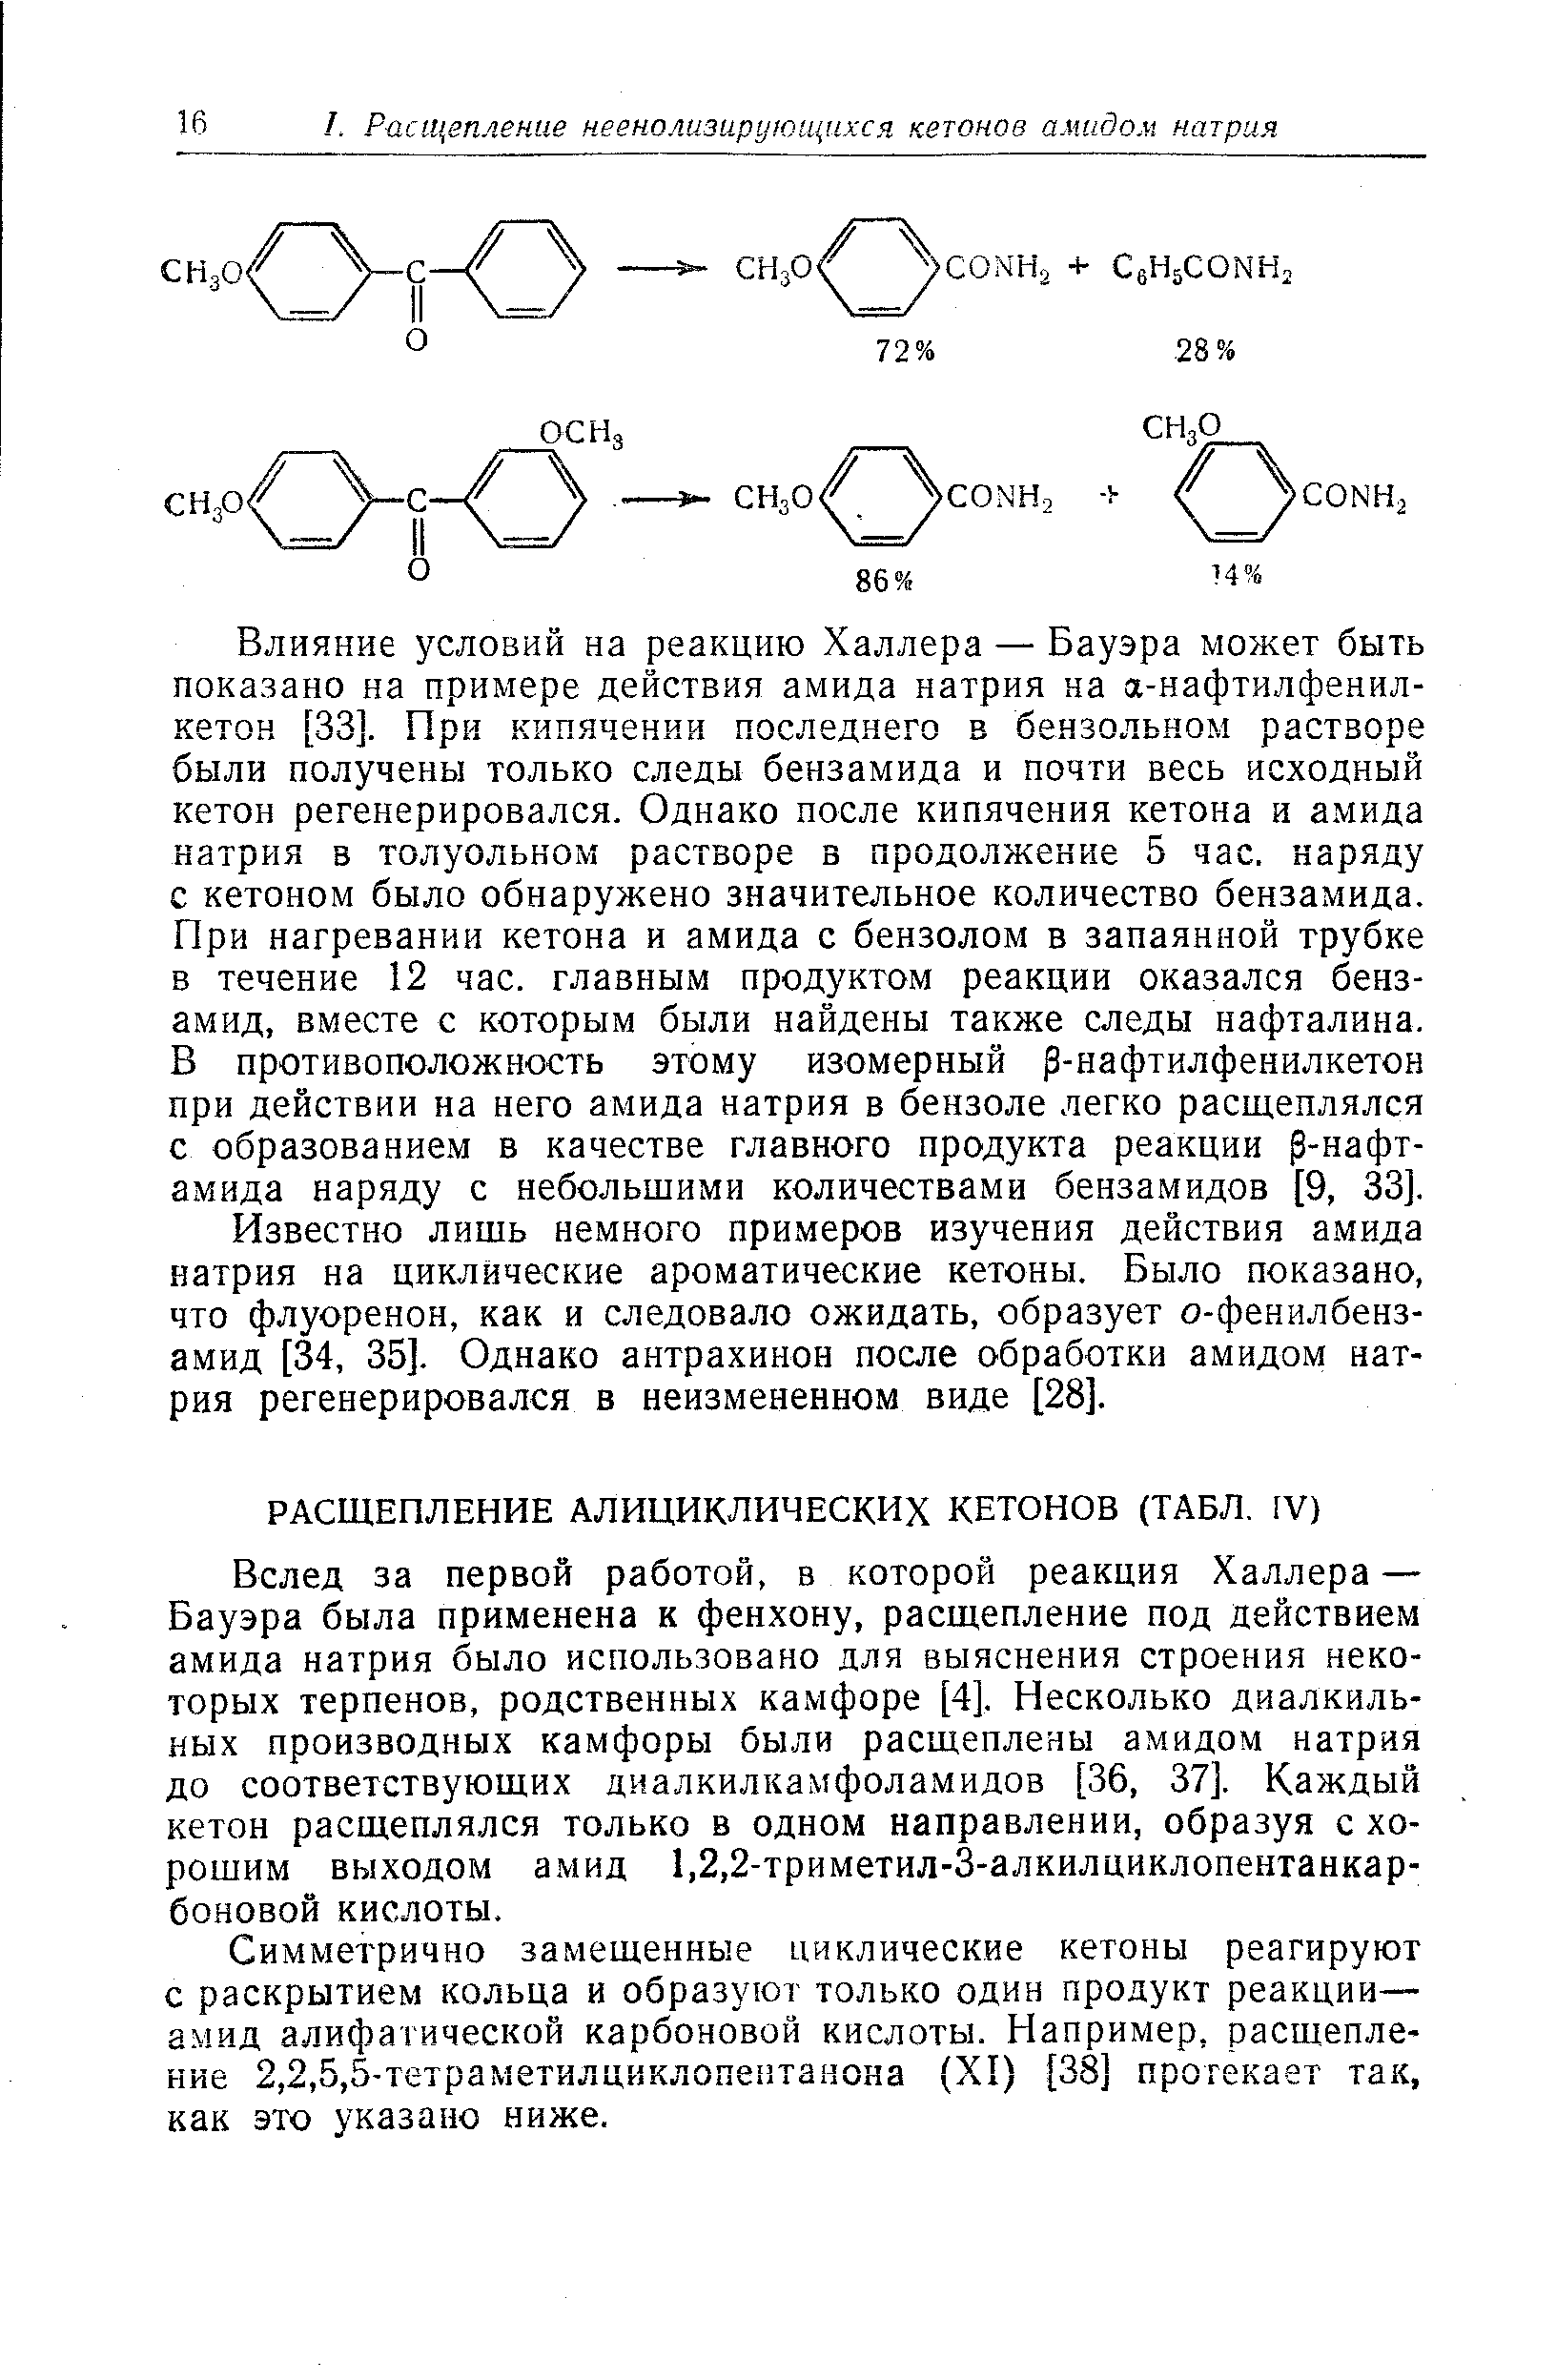 Симметрично замещенные циклические кетоны реагируют с раскрытием кольца и образуют только один продукт реакции-амид алифатической карбоновой кислоты. Например, расщепление 2,2,5,5-тетраметилциклопентаиона (XI) [38] протекает так, как это указано ниже.